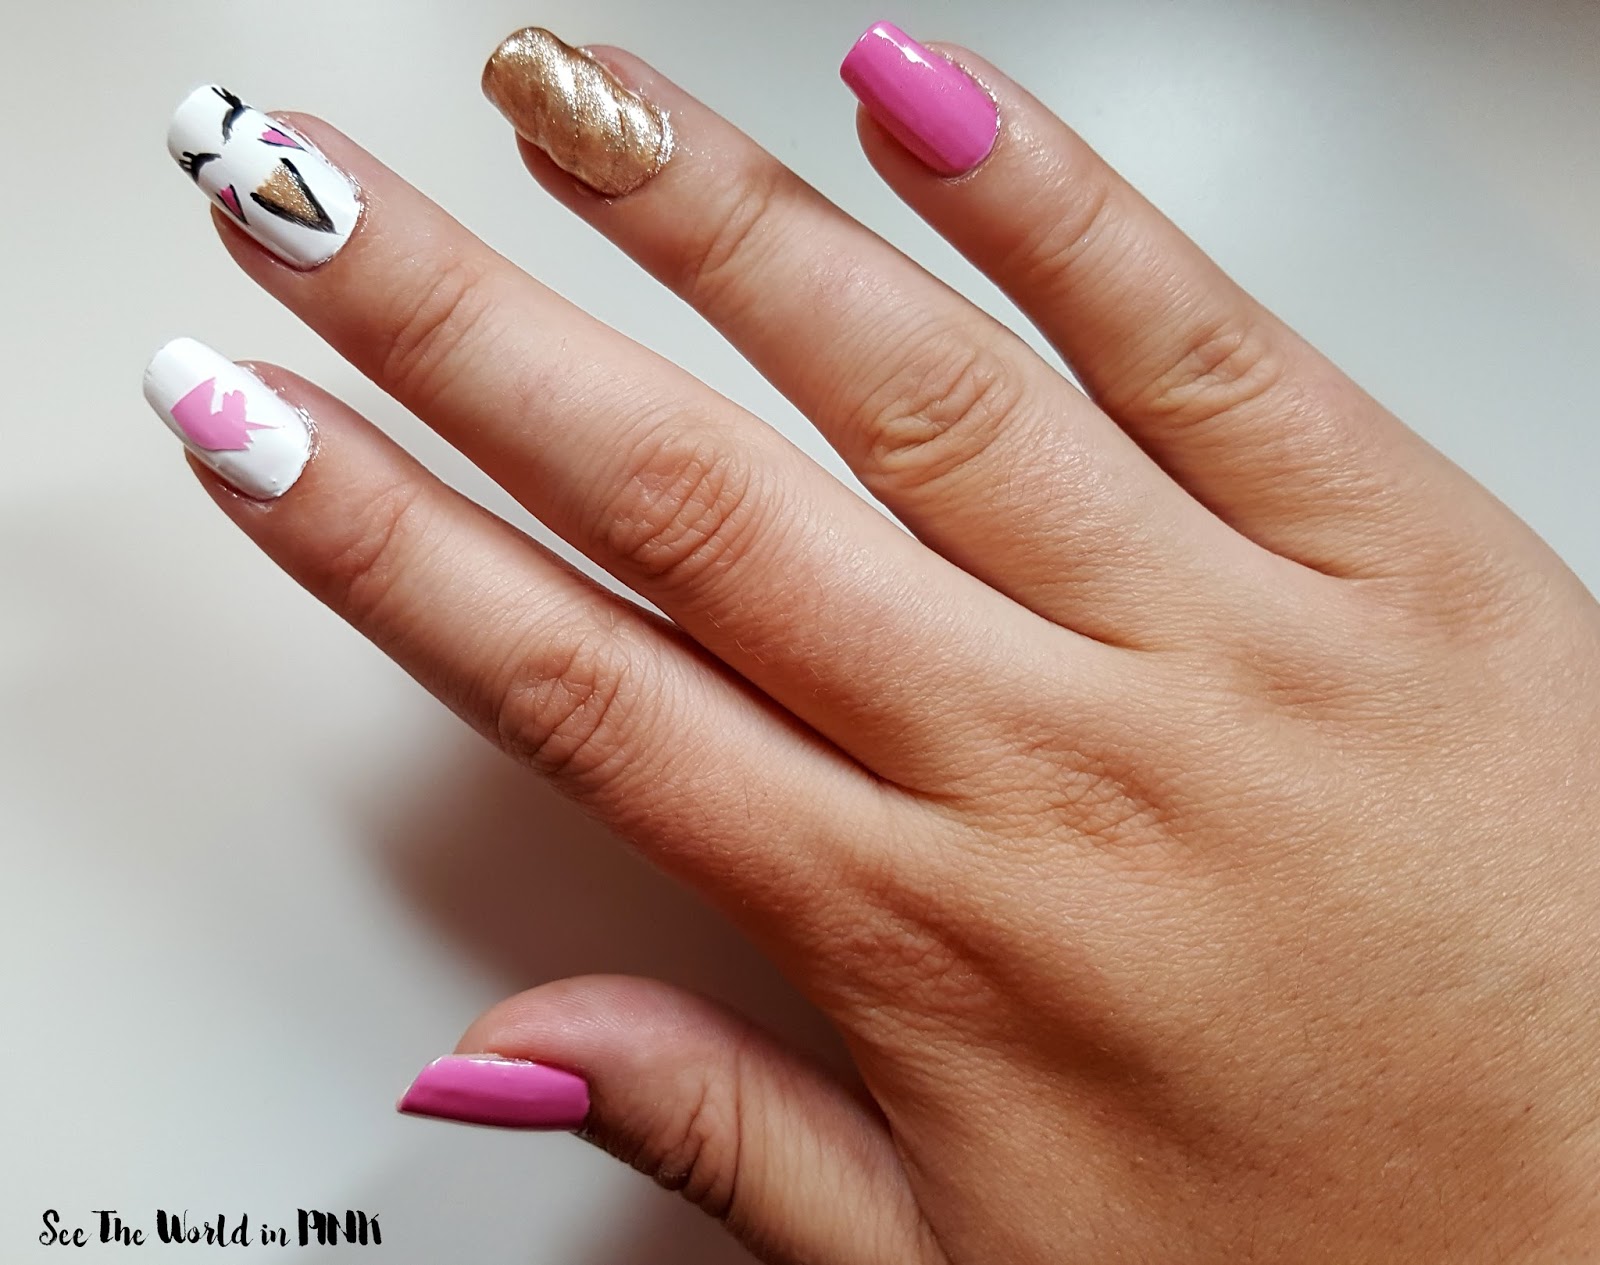 Manicure Wednesday - Unicorn Nail Art!